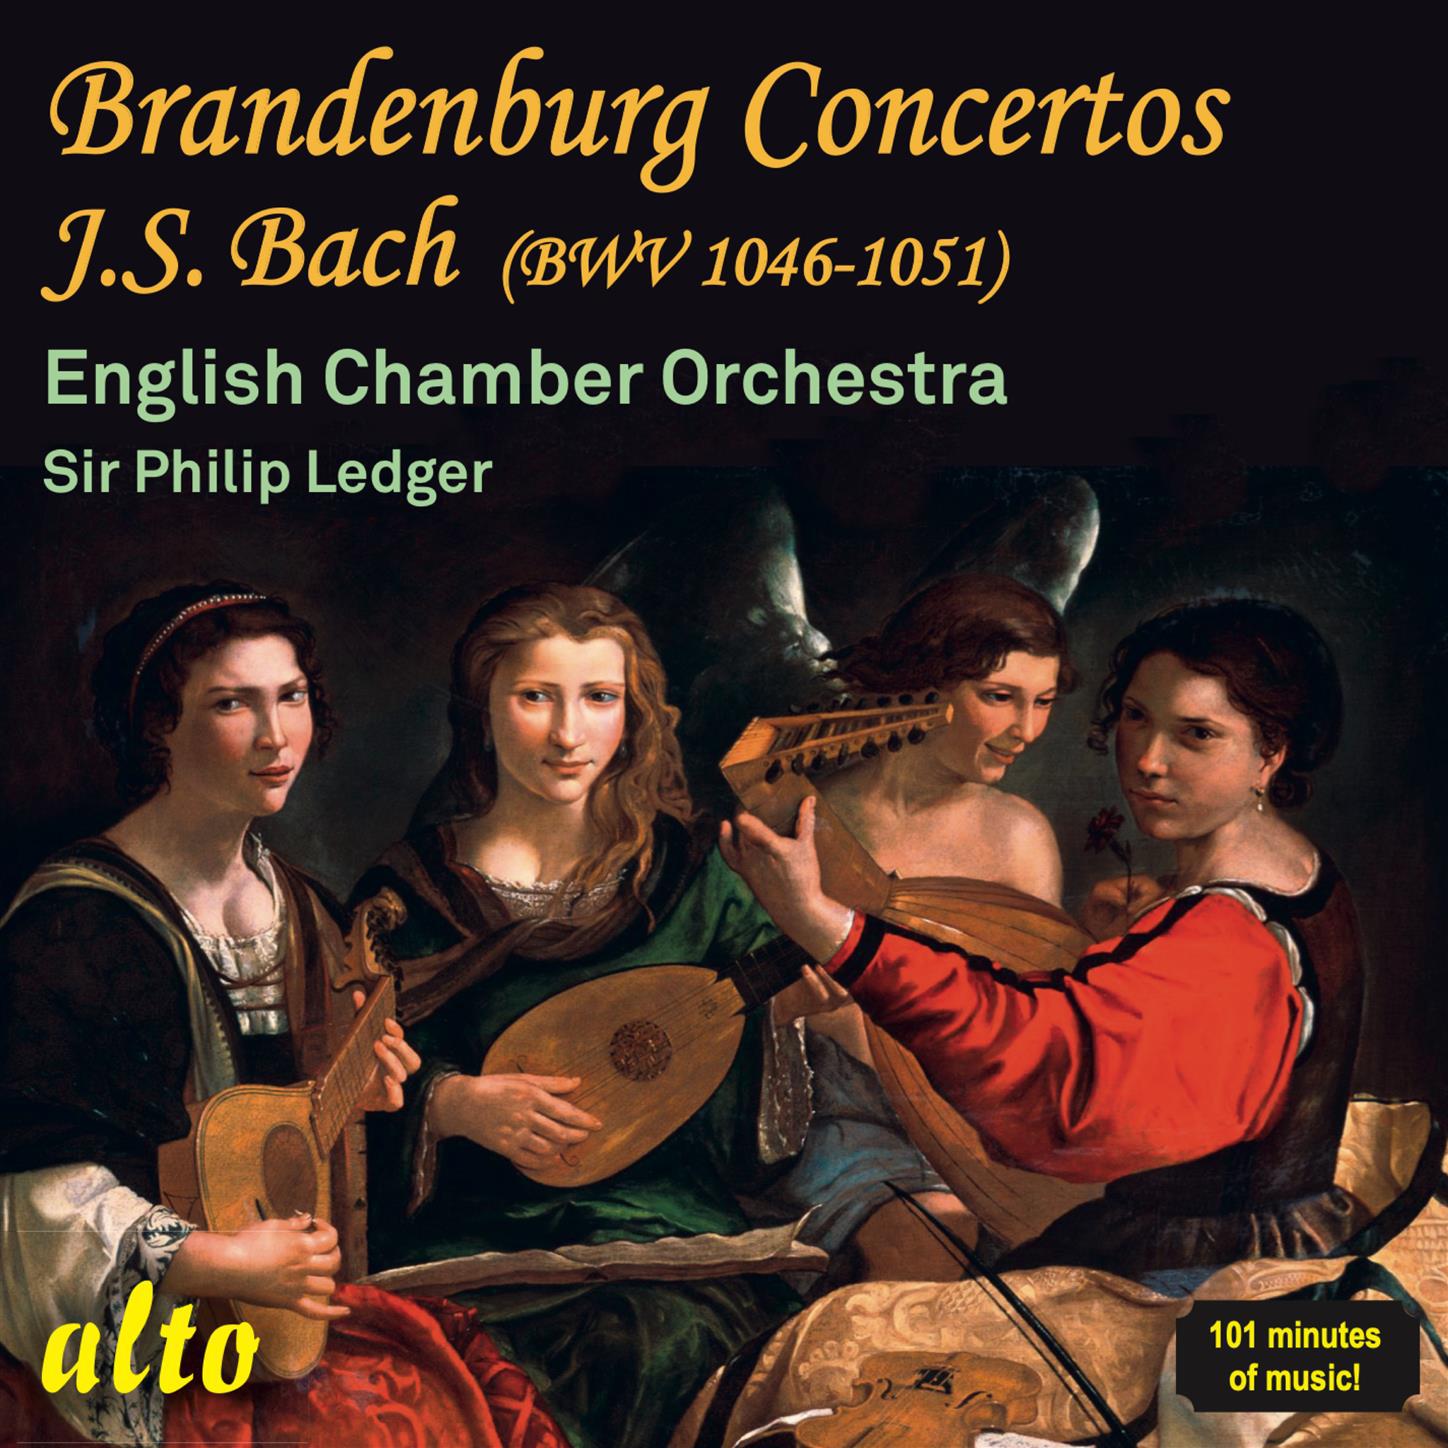 Brandenburg Concerto No.4 in G major, BWV 1049: I. Allegro